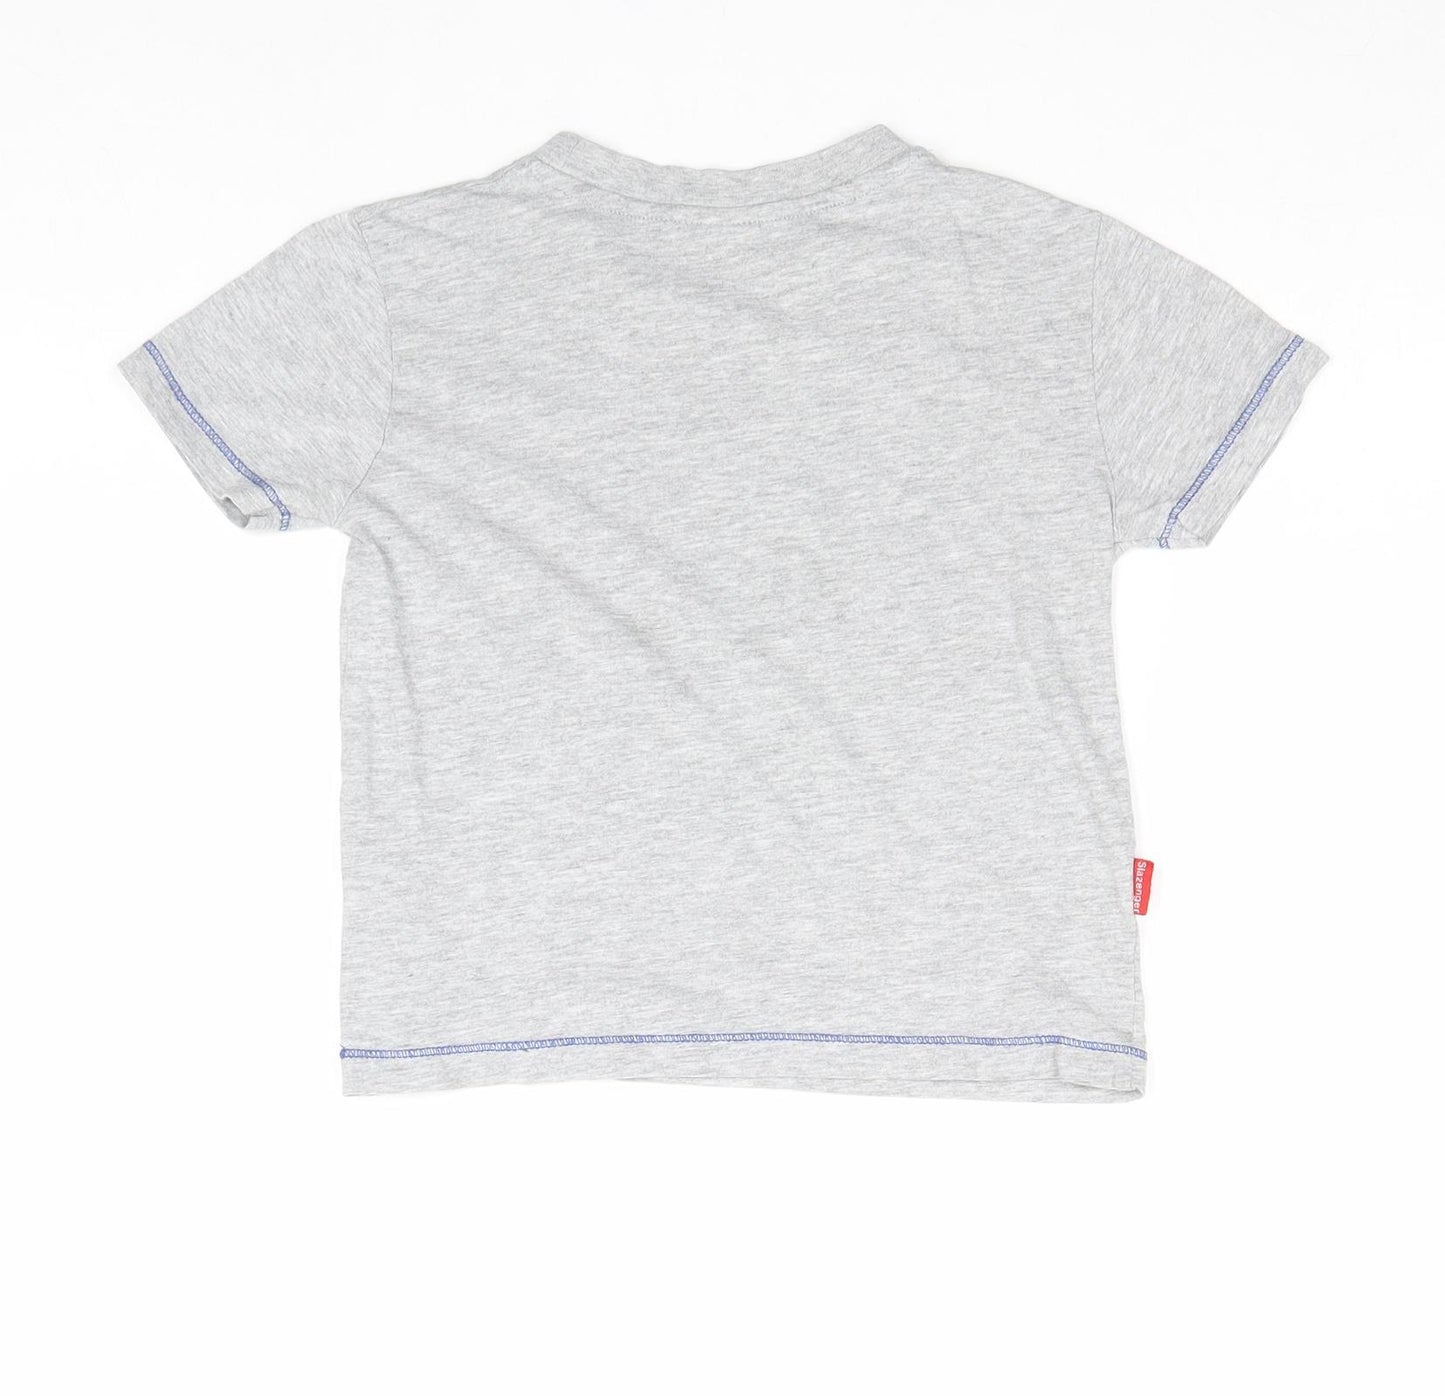 Slazenger Boys Grey Herringbone Polyester Basic T-Shirt Size 3-4 Years Roll Neck Pullover